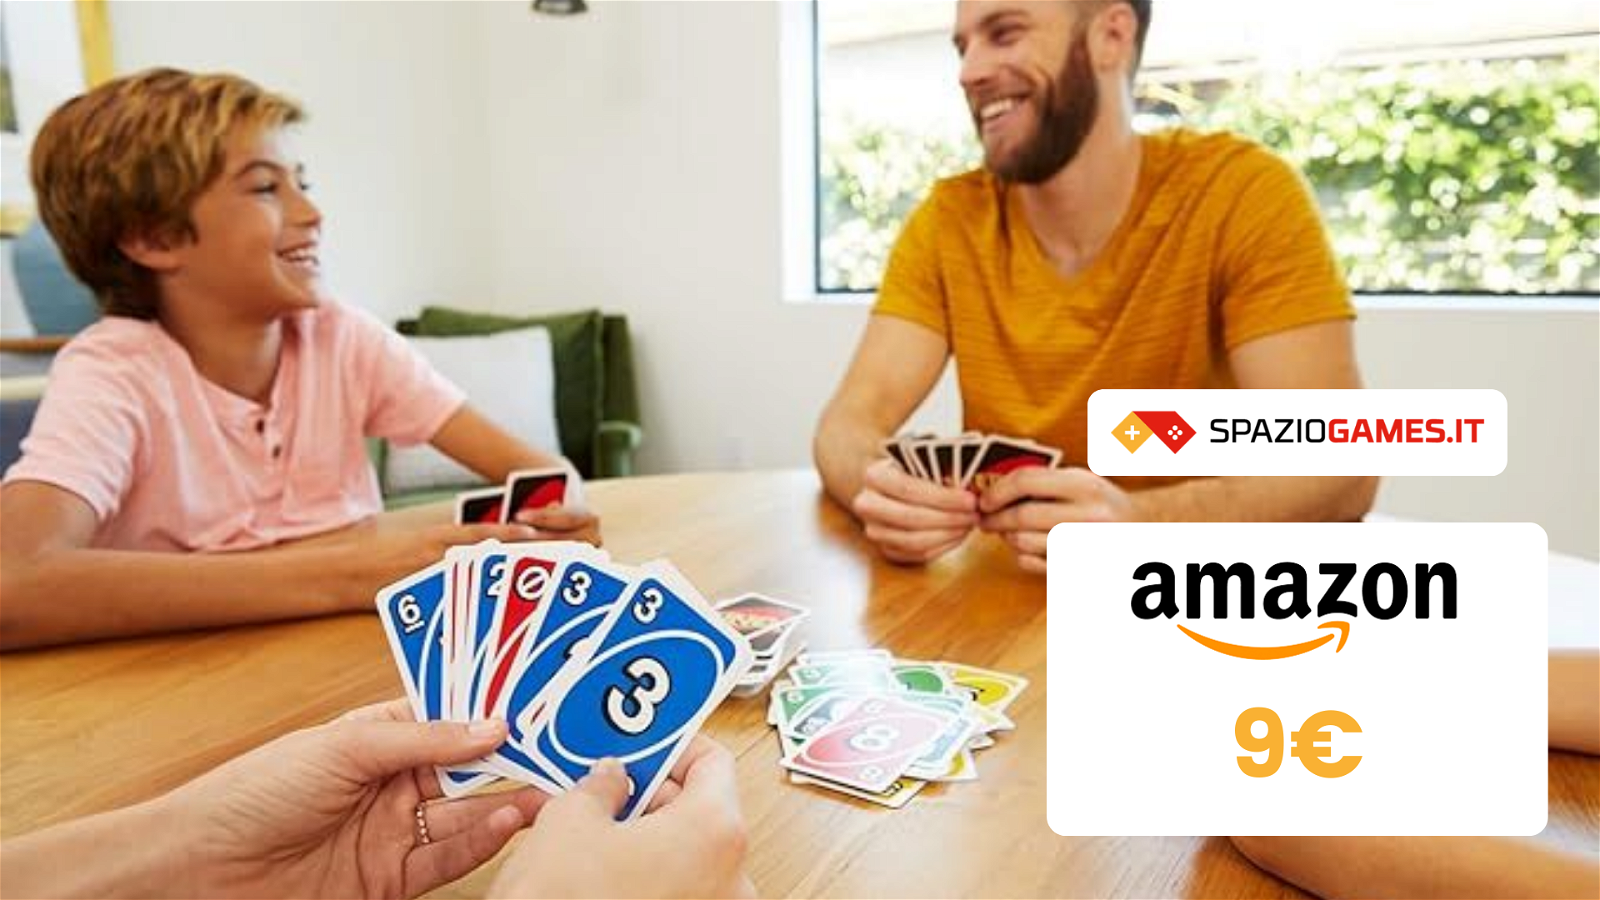 UNO a soli 9€: il gioco di carte più venduto su Amazon!